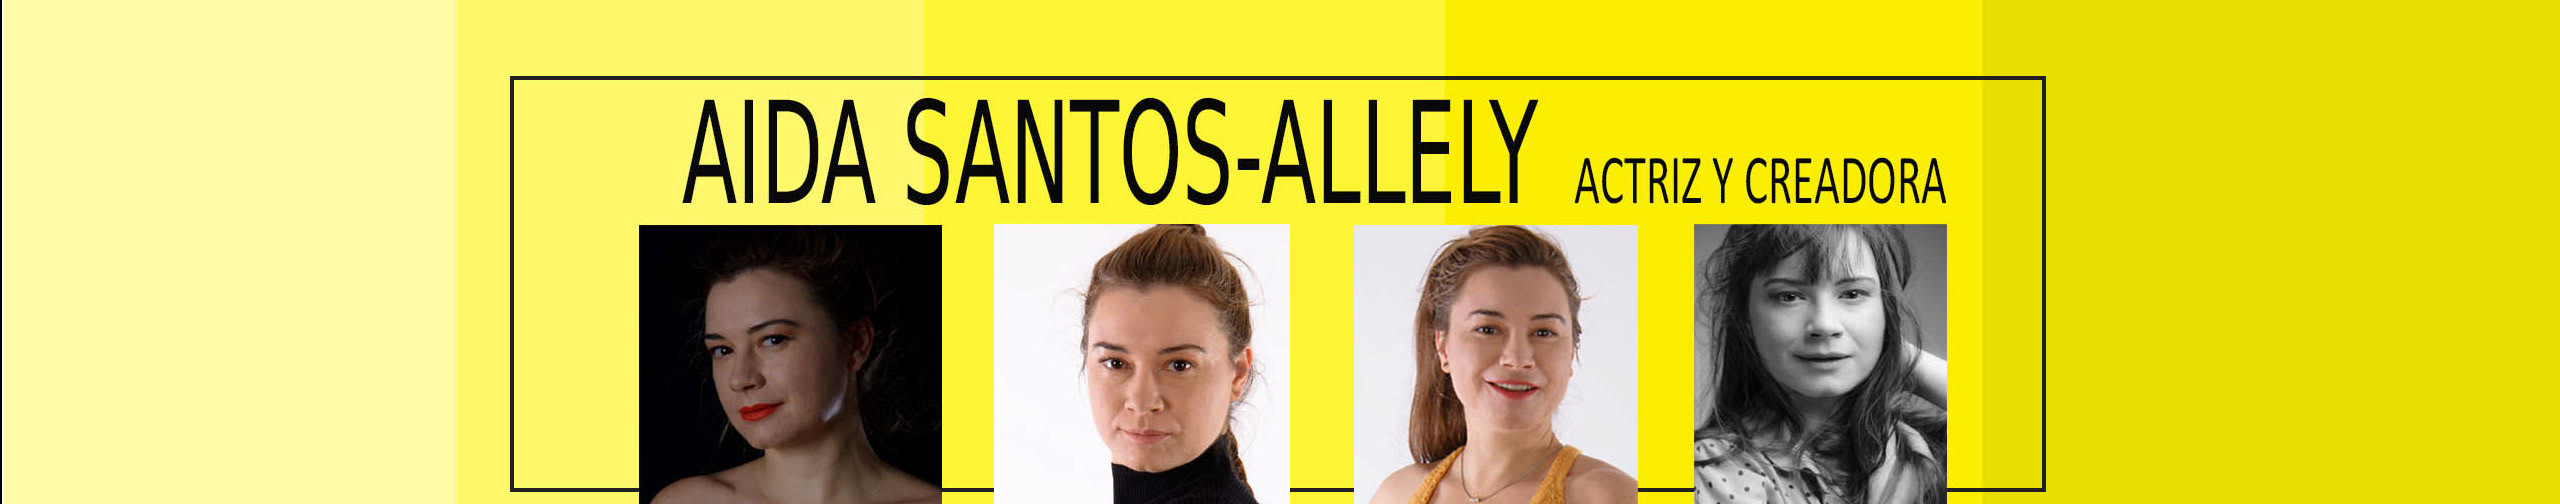 Bannière de profil de Aida Santos-Allely